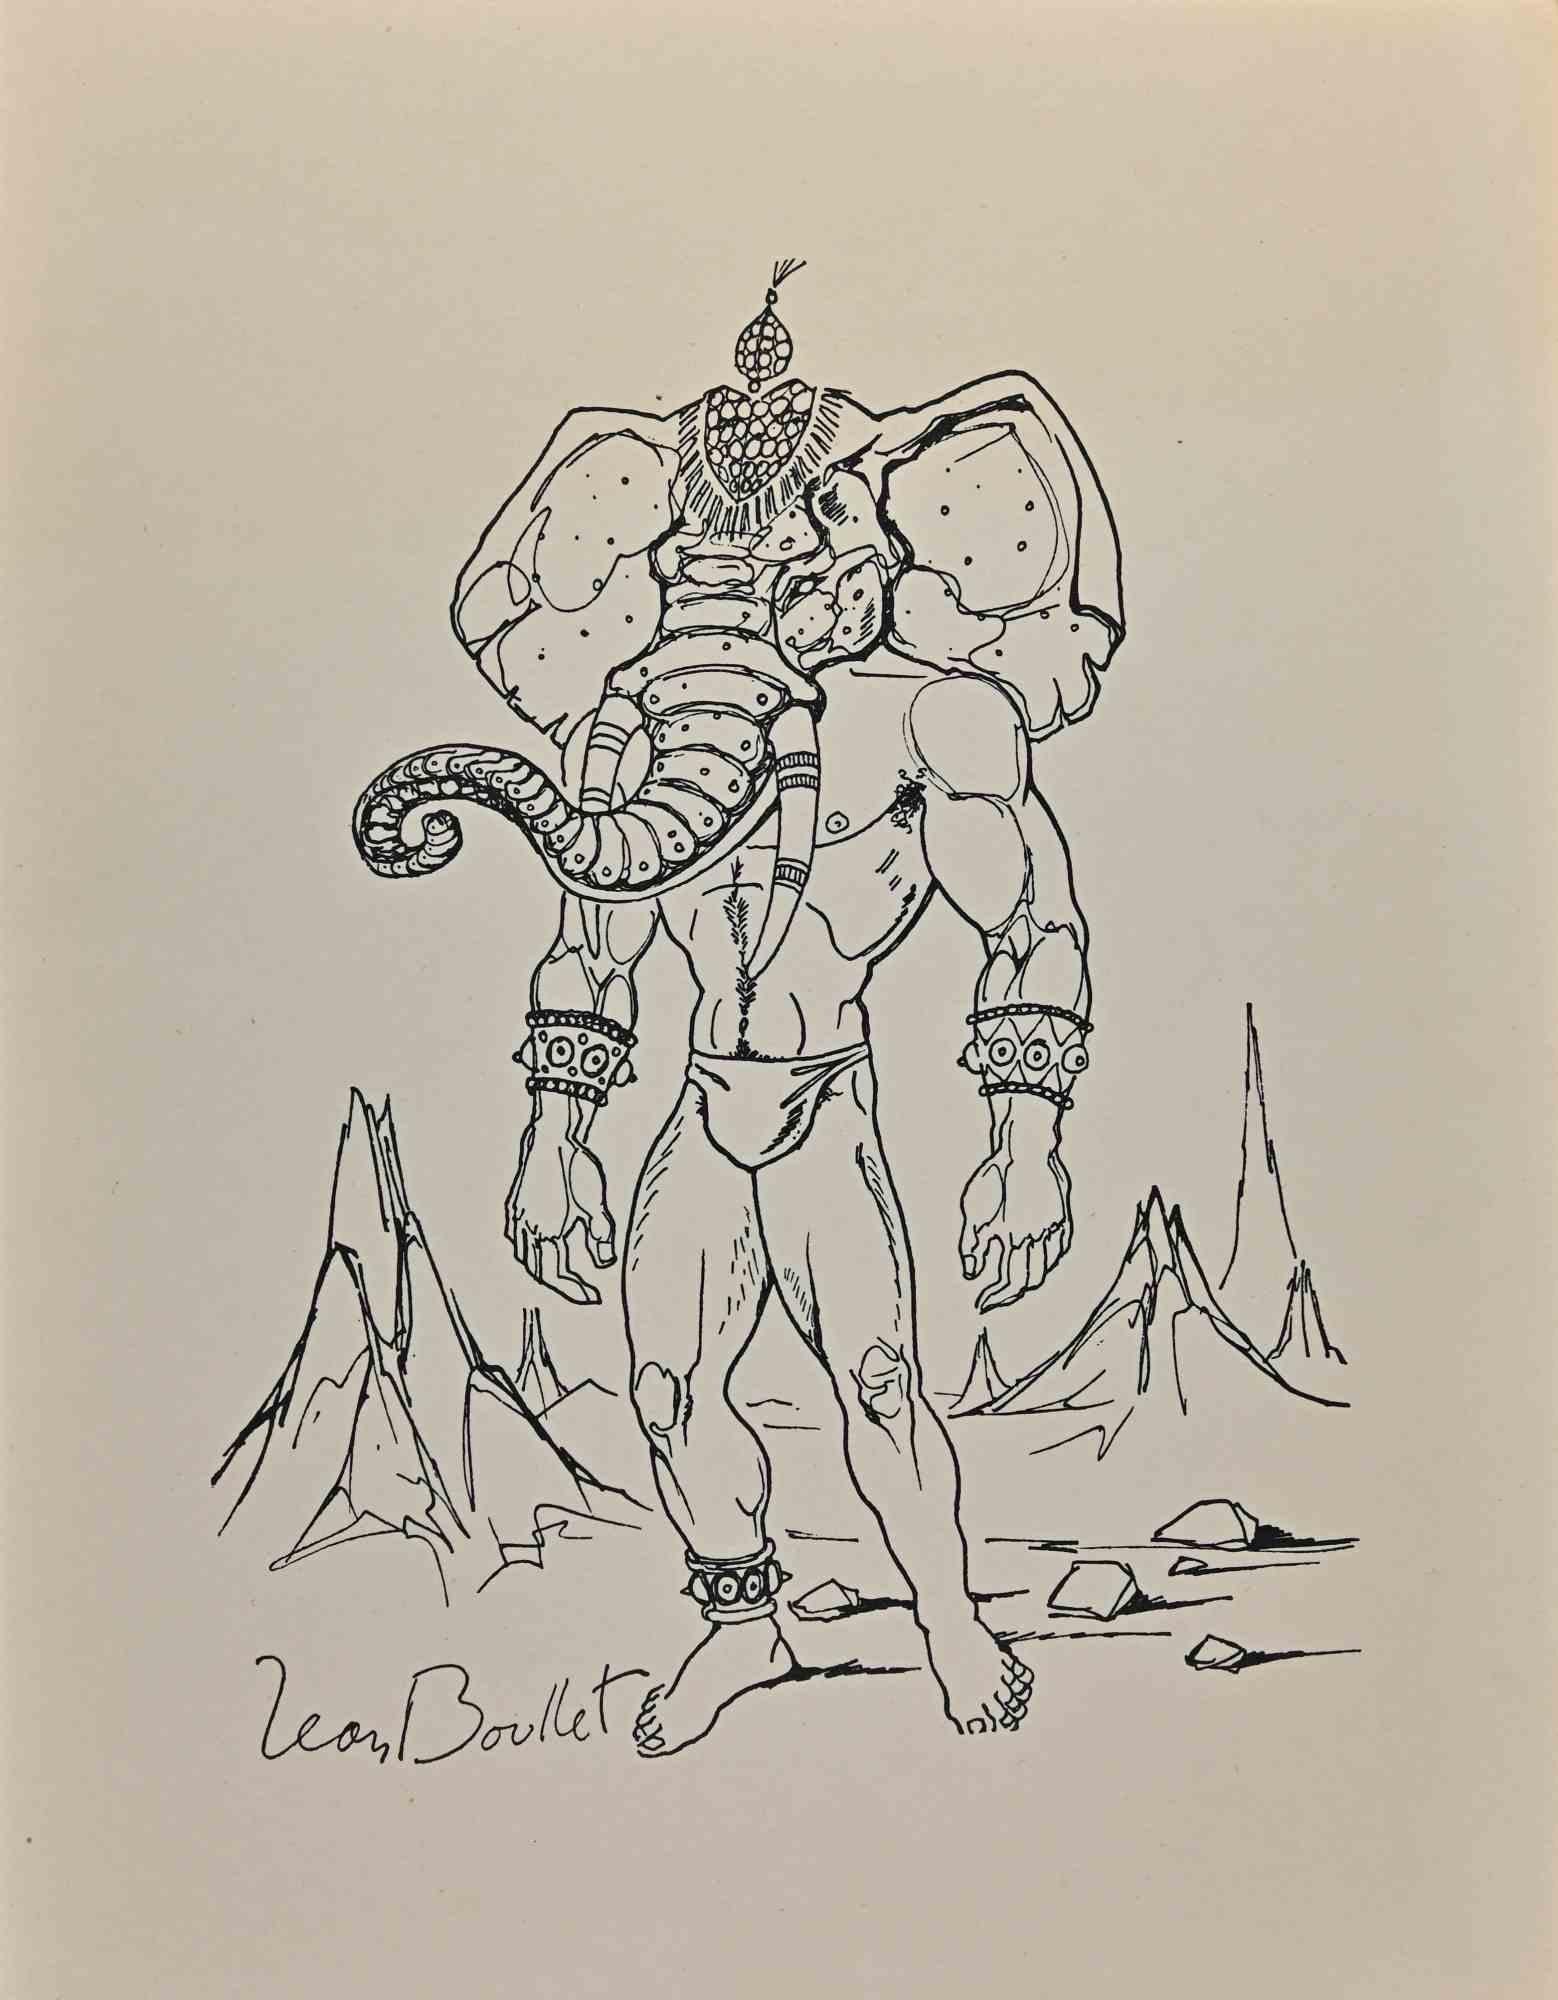 Elefantenmensch - Metamorphose ist eine Original-Lithografie, die in den 1950er Jahren von Leon Boullet (1921-1970) geschaffen wurde.

Gute Bedingungen.

Signiert auf der Platte.

Das Kunstwerk wird mit kräftigen Strichen in einer ausgewogenen